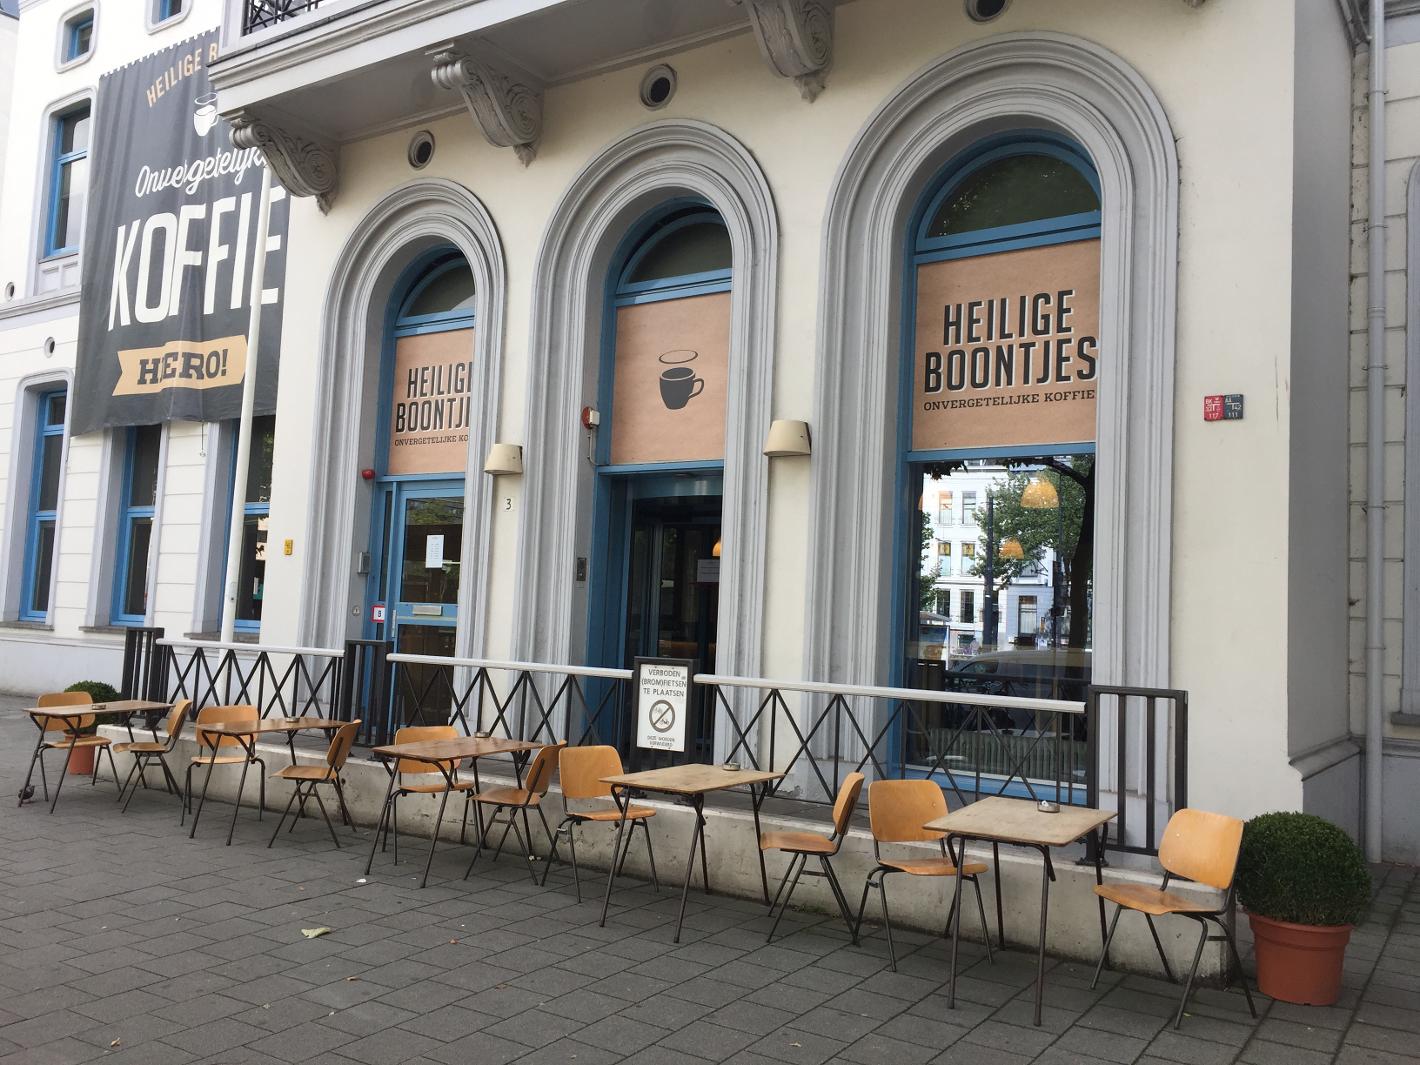 Foto Heilige Boontjes in Rotterdam, Eten & drinken, Koffie thee drinken - #2